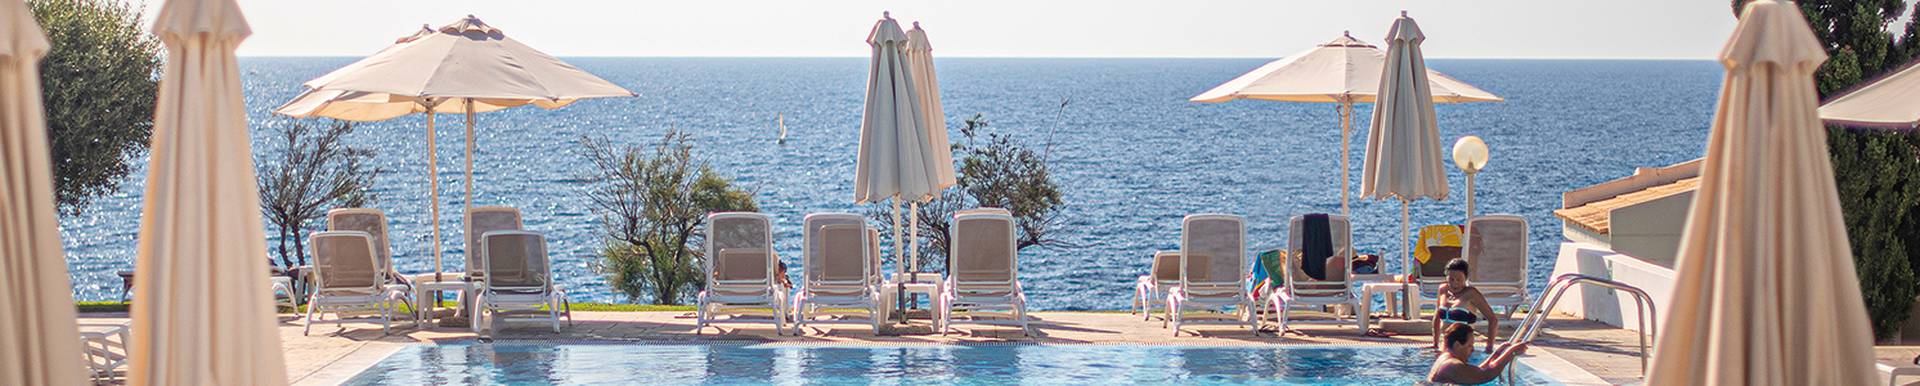 Blau Punta Reina Resort - Mallorca - 